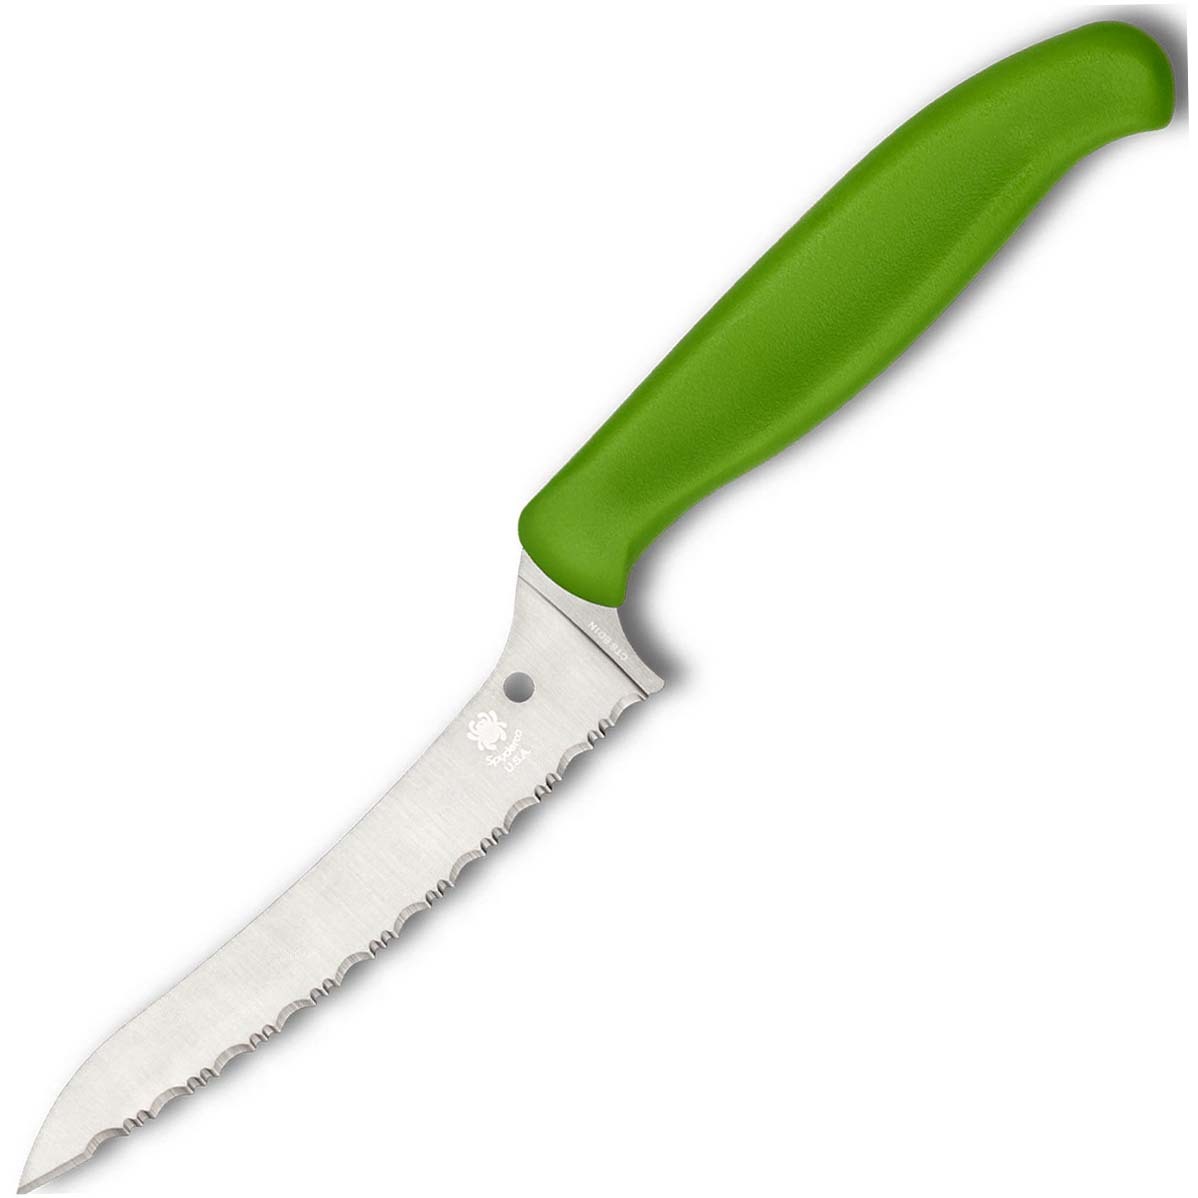 Универсальный кухонный нож Spyderco Z-Cut SpyderEdge Offset Kitchen, сталь CTS - BD1 Alloy, рукоять зеленый полипропилен